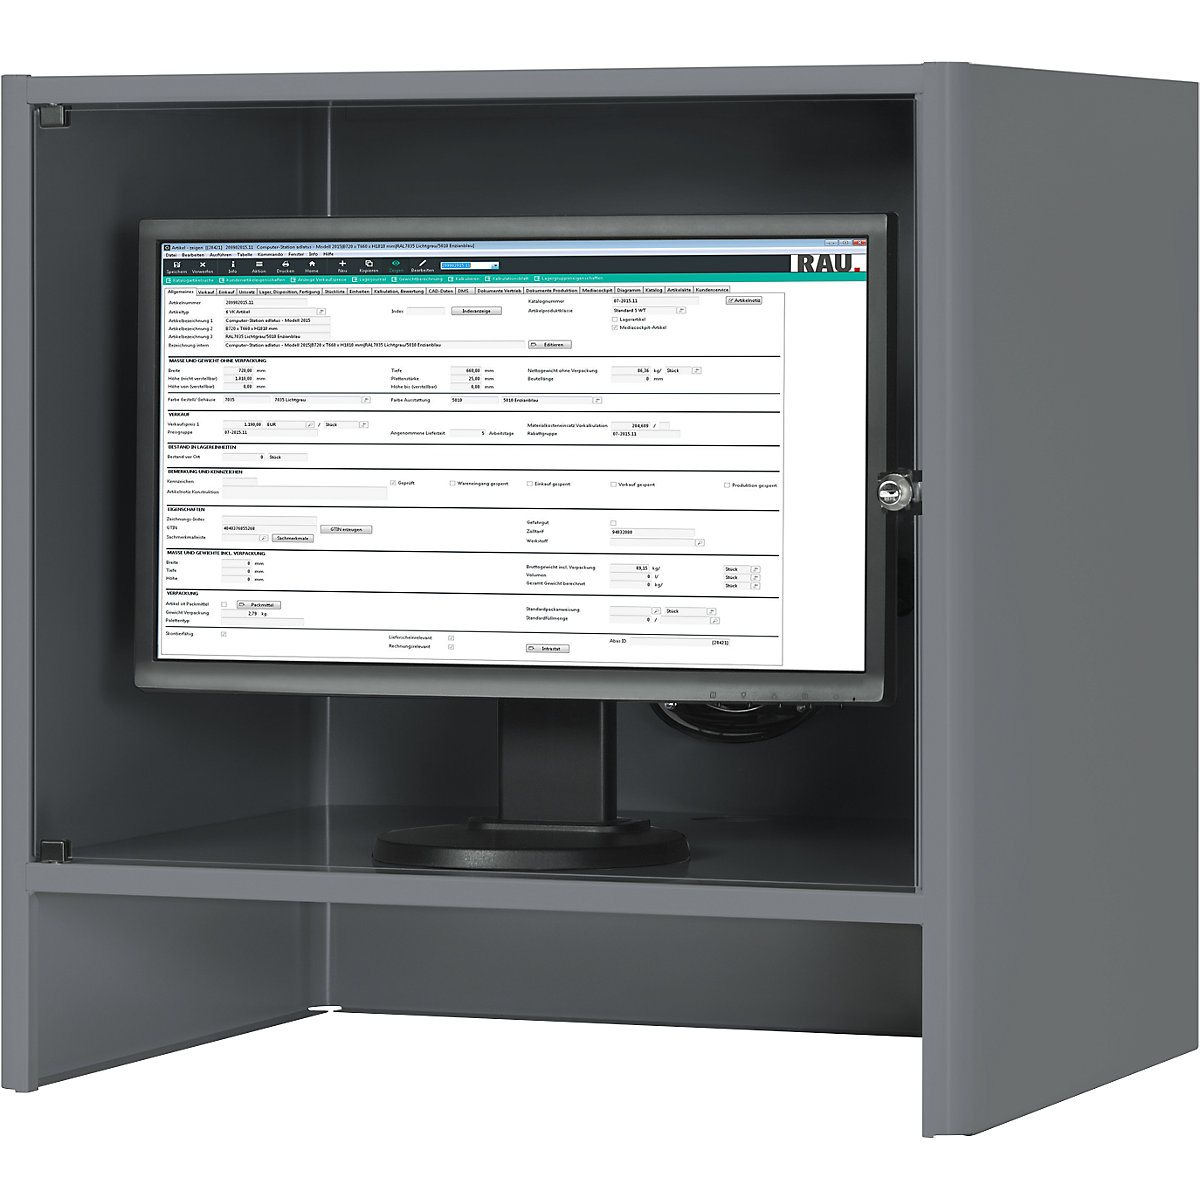 RAU – Carcasă pentru monitor cu ventilator activ integrat (Imagine produs 2)